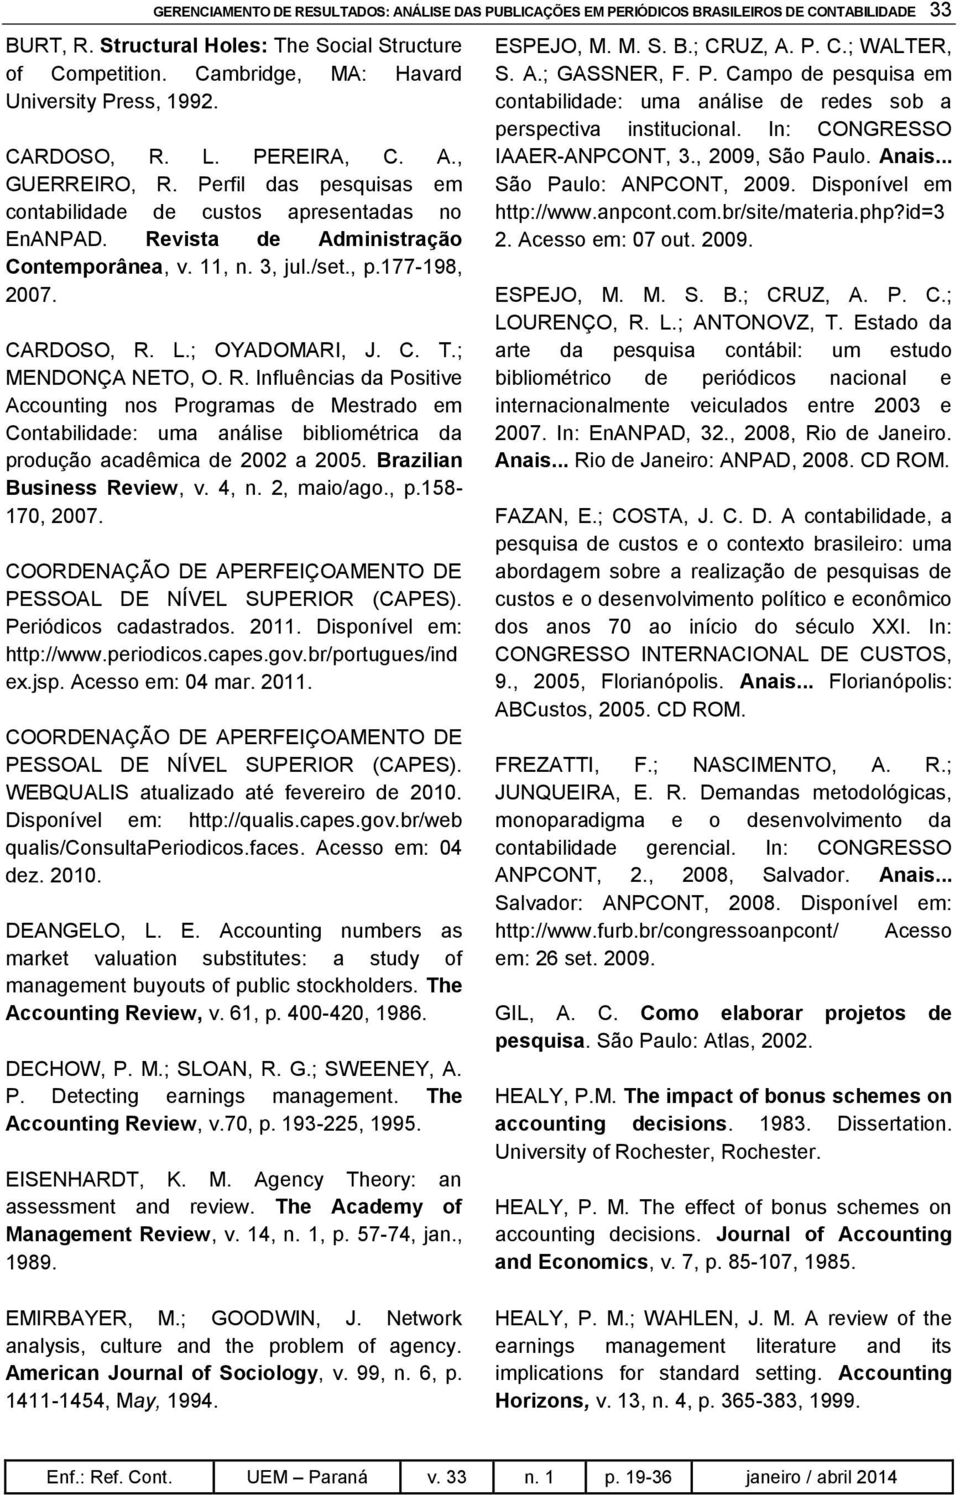 Revista de Administração Contemporânea, v. 11, n. 3, jul./set., p.177-198, 2007. CARDOSO, R.